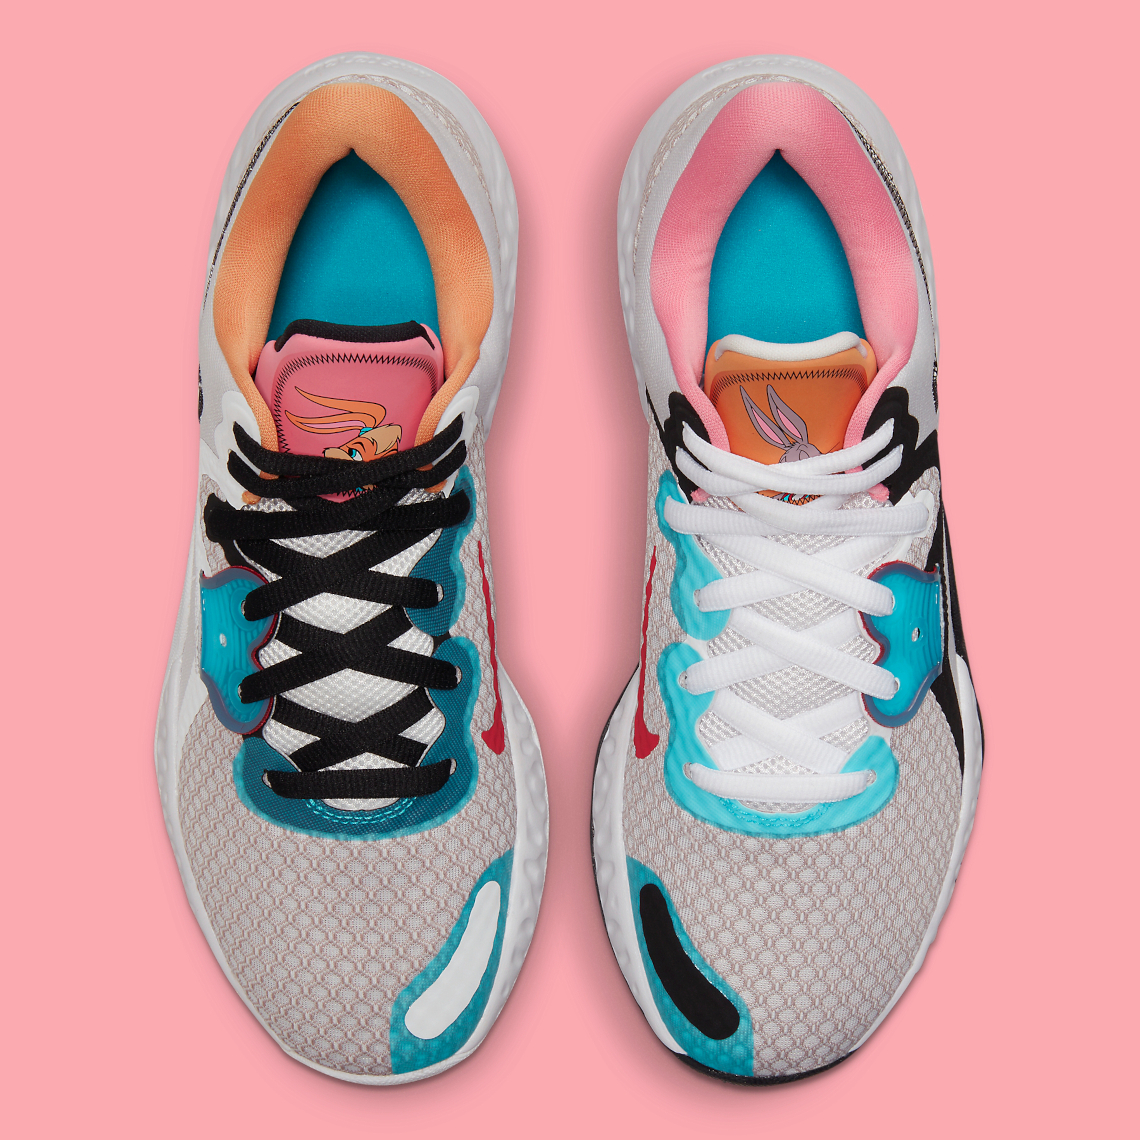 Lola Bunny Nike Renew 2 CW3406-505 | SneakerNews.com